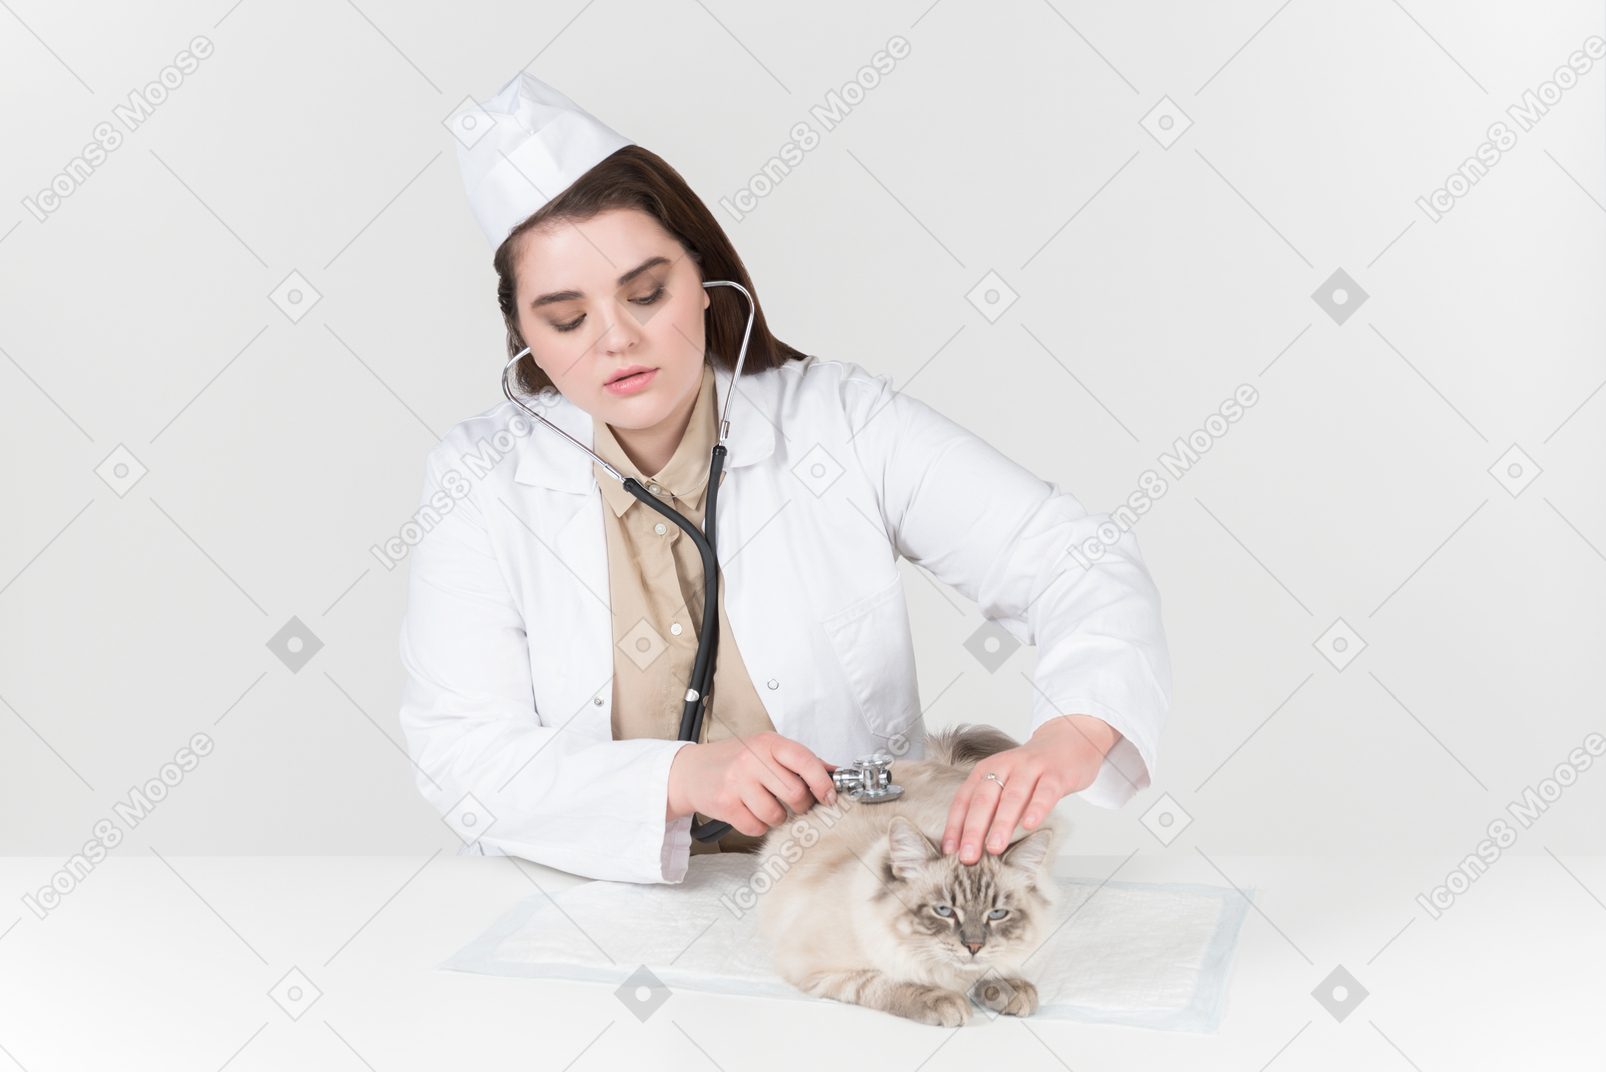 Junge weibliche hörende katze des tierarztes mit einem stethoskop